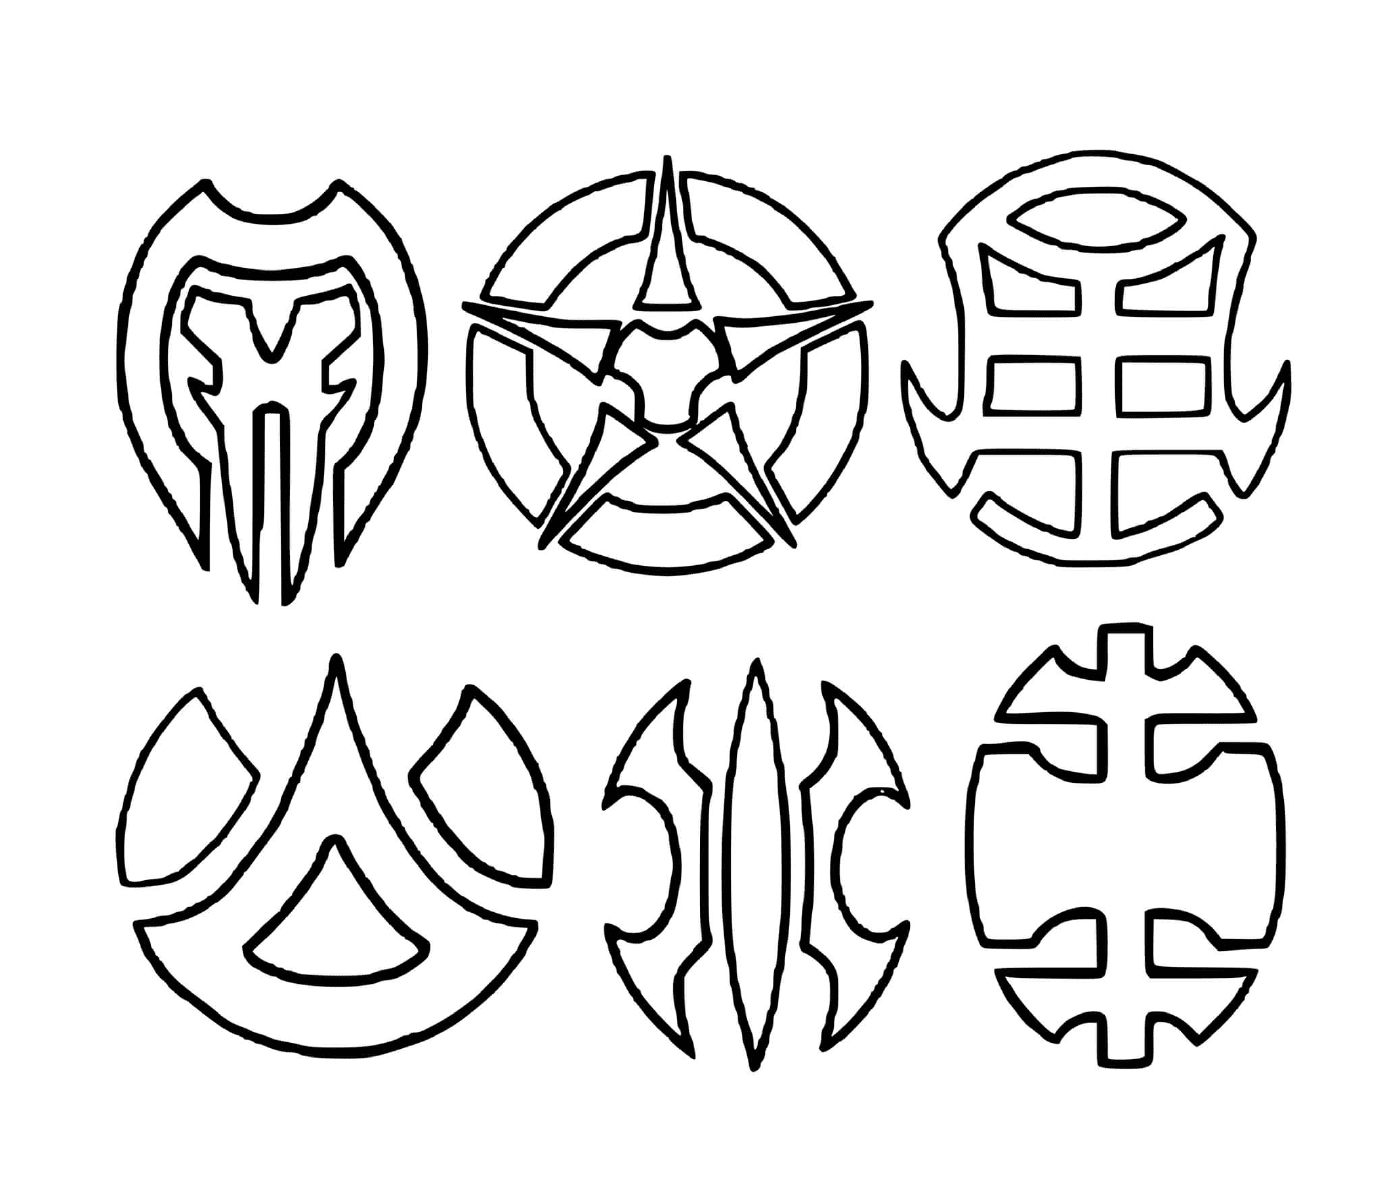  ein Satz von sechs gezeichneten Symbolen 